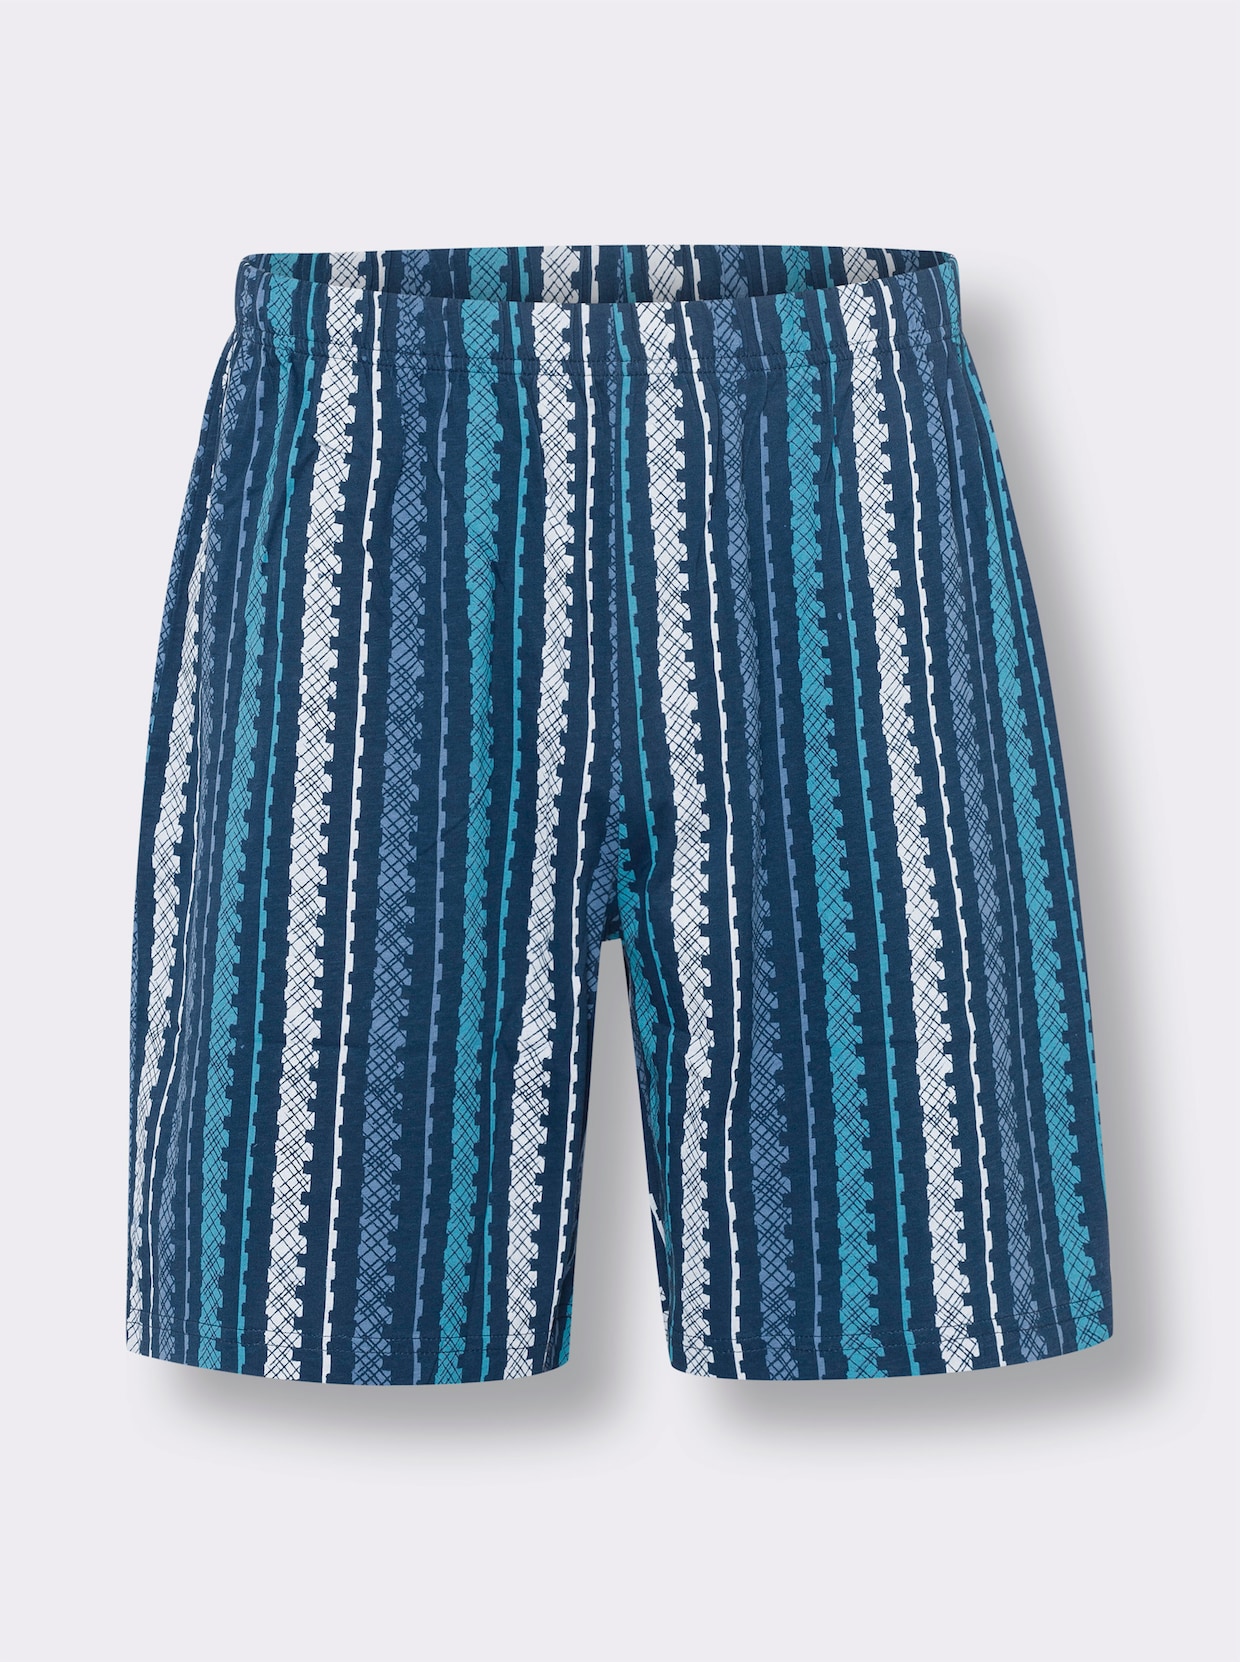 Krátke pyžamo - Stredne modré pruhovanie